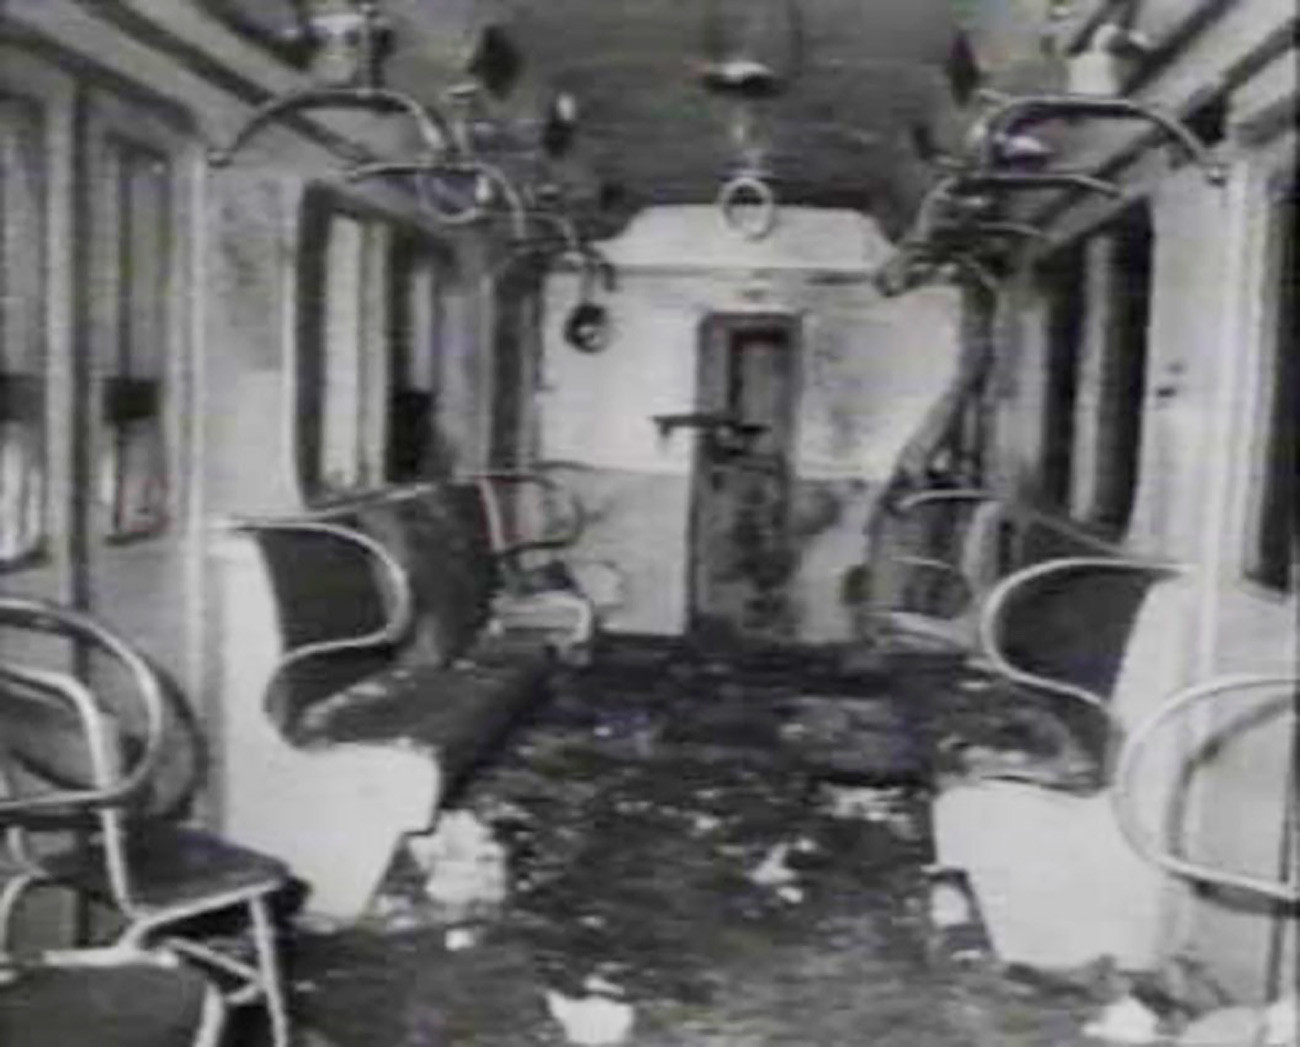 Vagon Moskovskog metroa poslije terorističkog napada (1977.)

